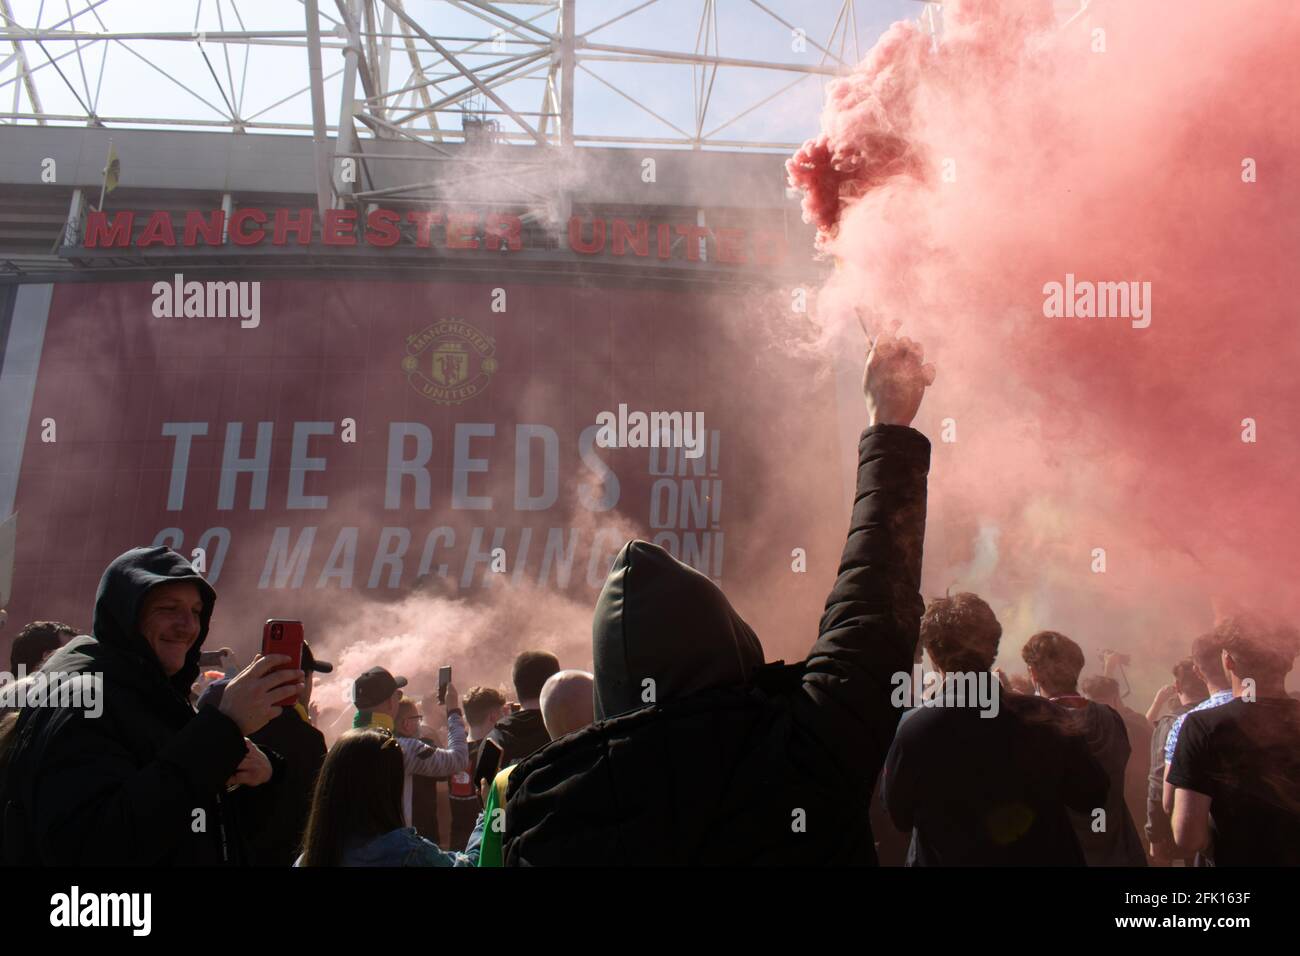 Protesta contra Glazer en el campo de fútbol Old Trafford . Apoyo que sostiene la llamarada de humo rojo. Texto Los Reds visibles. Estadio del Manchester United, Reino Unido. Foto de stock